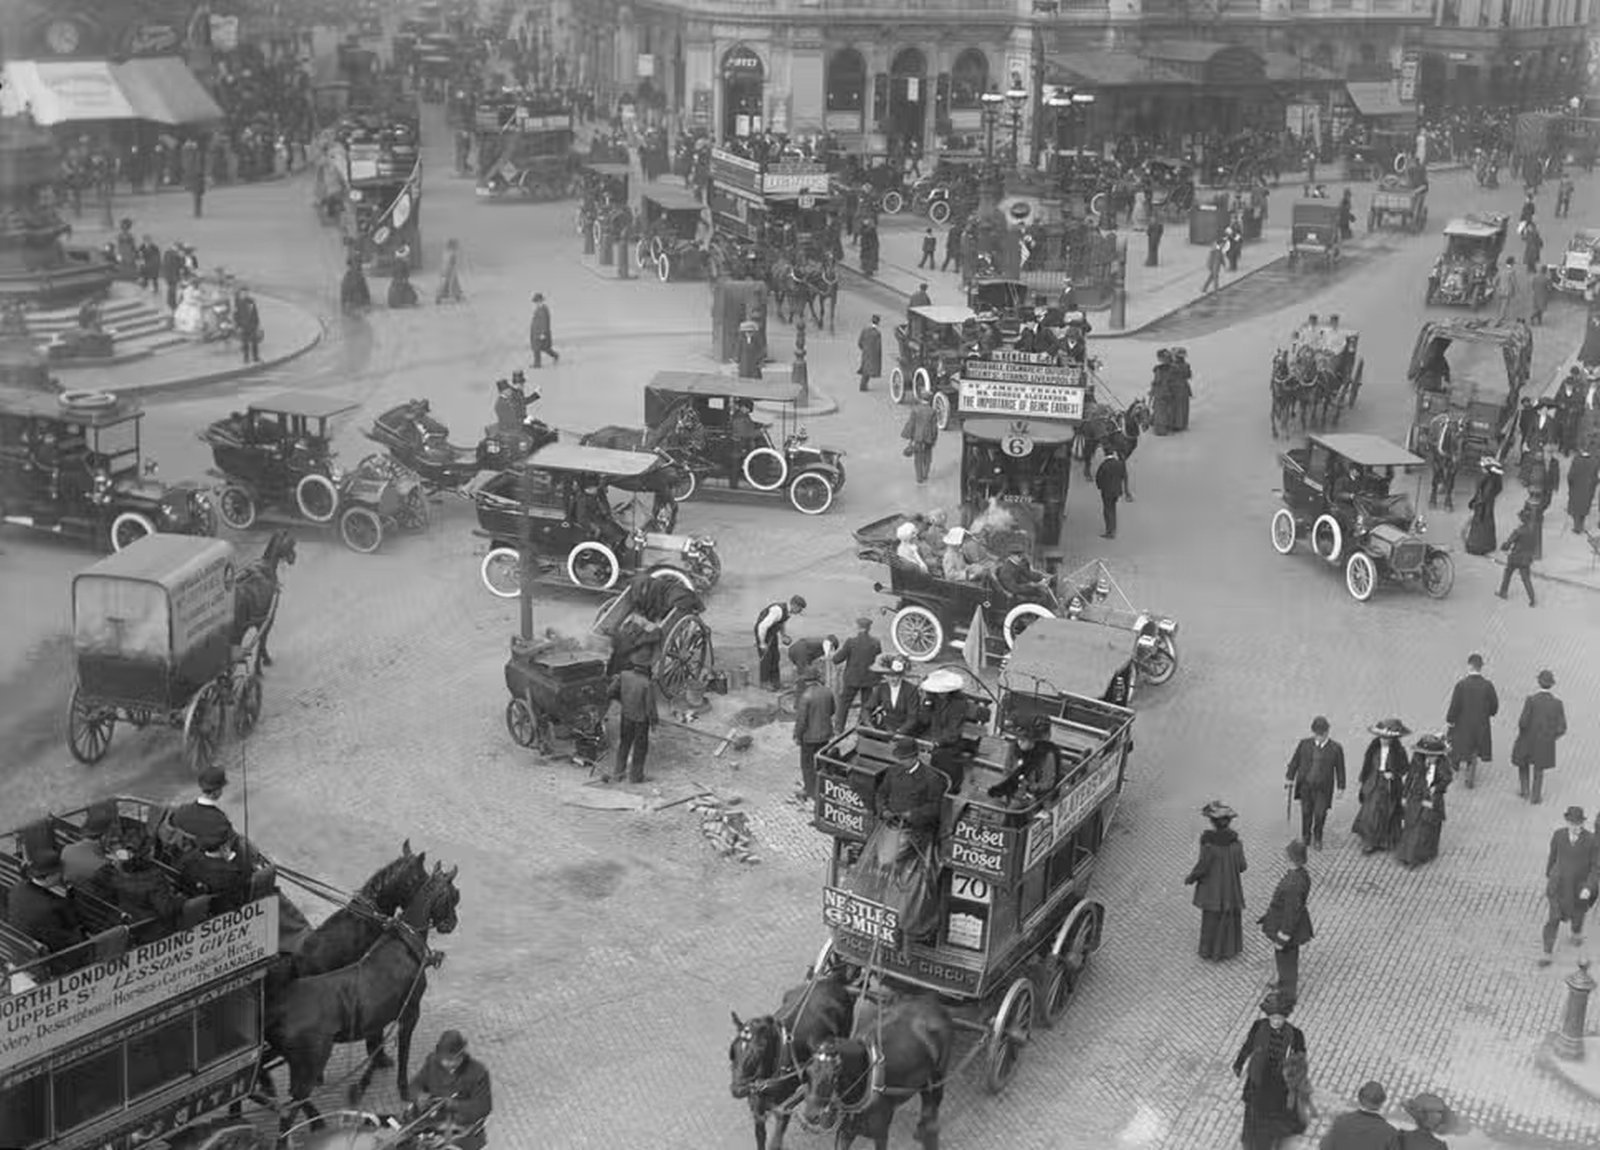 1 видео 19. Лондон 1910 год. Уильям Фелпс ино американский бизнесмен. Лондон 1905 год. Дорожное движение в древности.